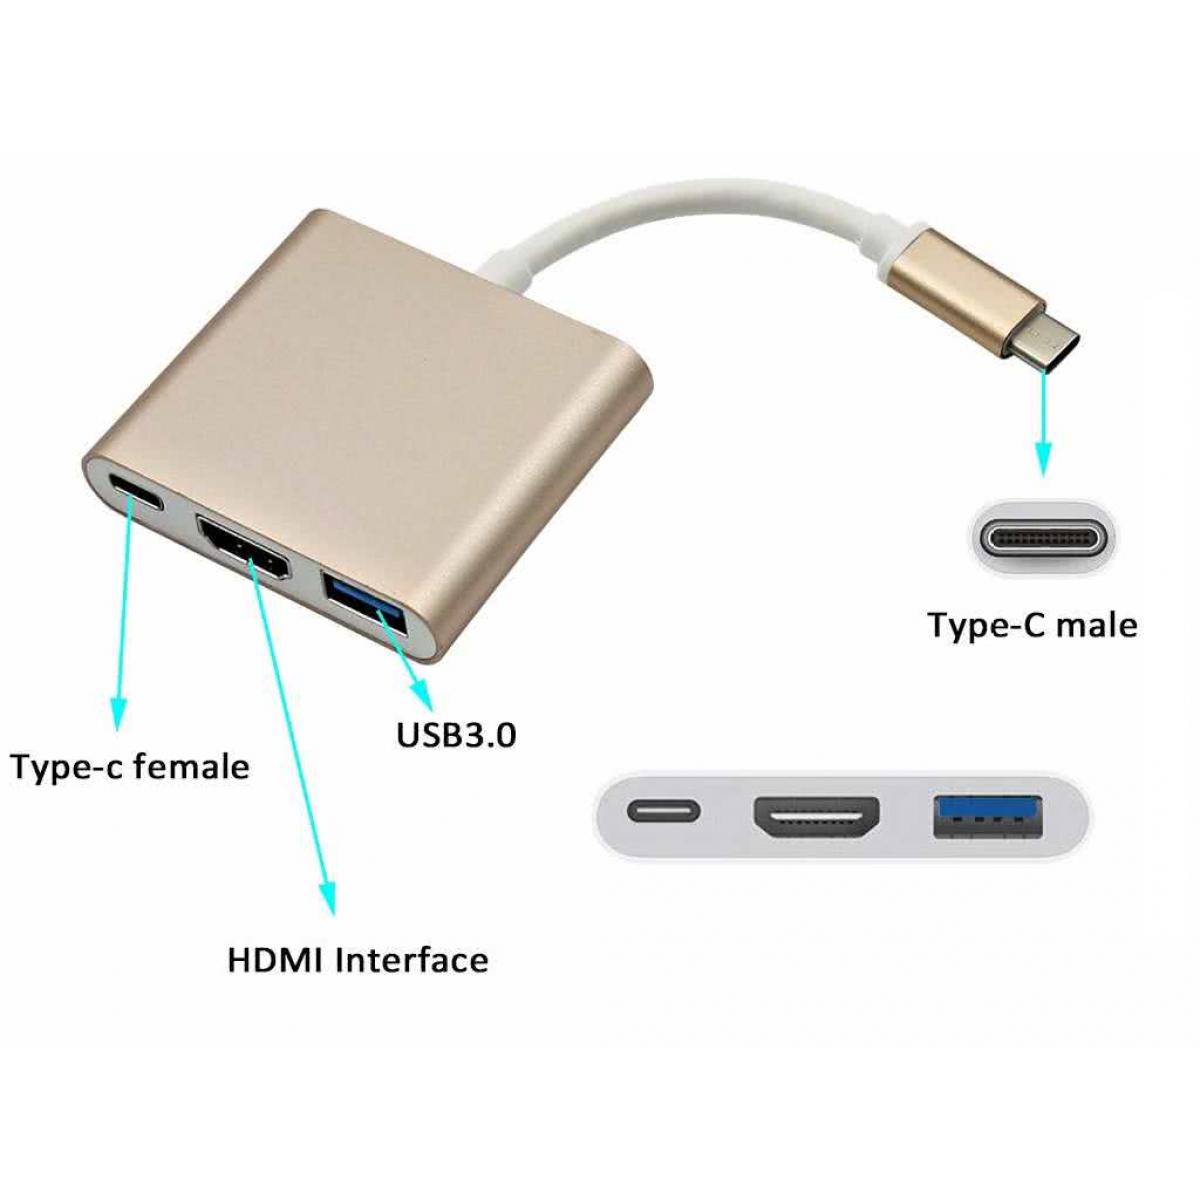 Type c package. Переходник Type-c Hub USB3.0 - HDMI - Type-c. USB 3 to Type c. USB Type c 3.0 USB адаптер HDMI. Переходник 3 in 1 Type-c to USB, HDMI, Type-c серебристый.